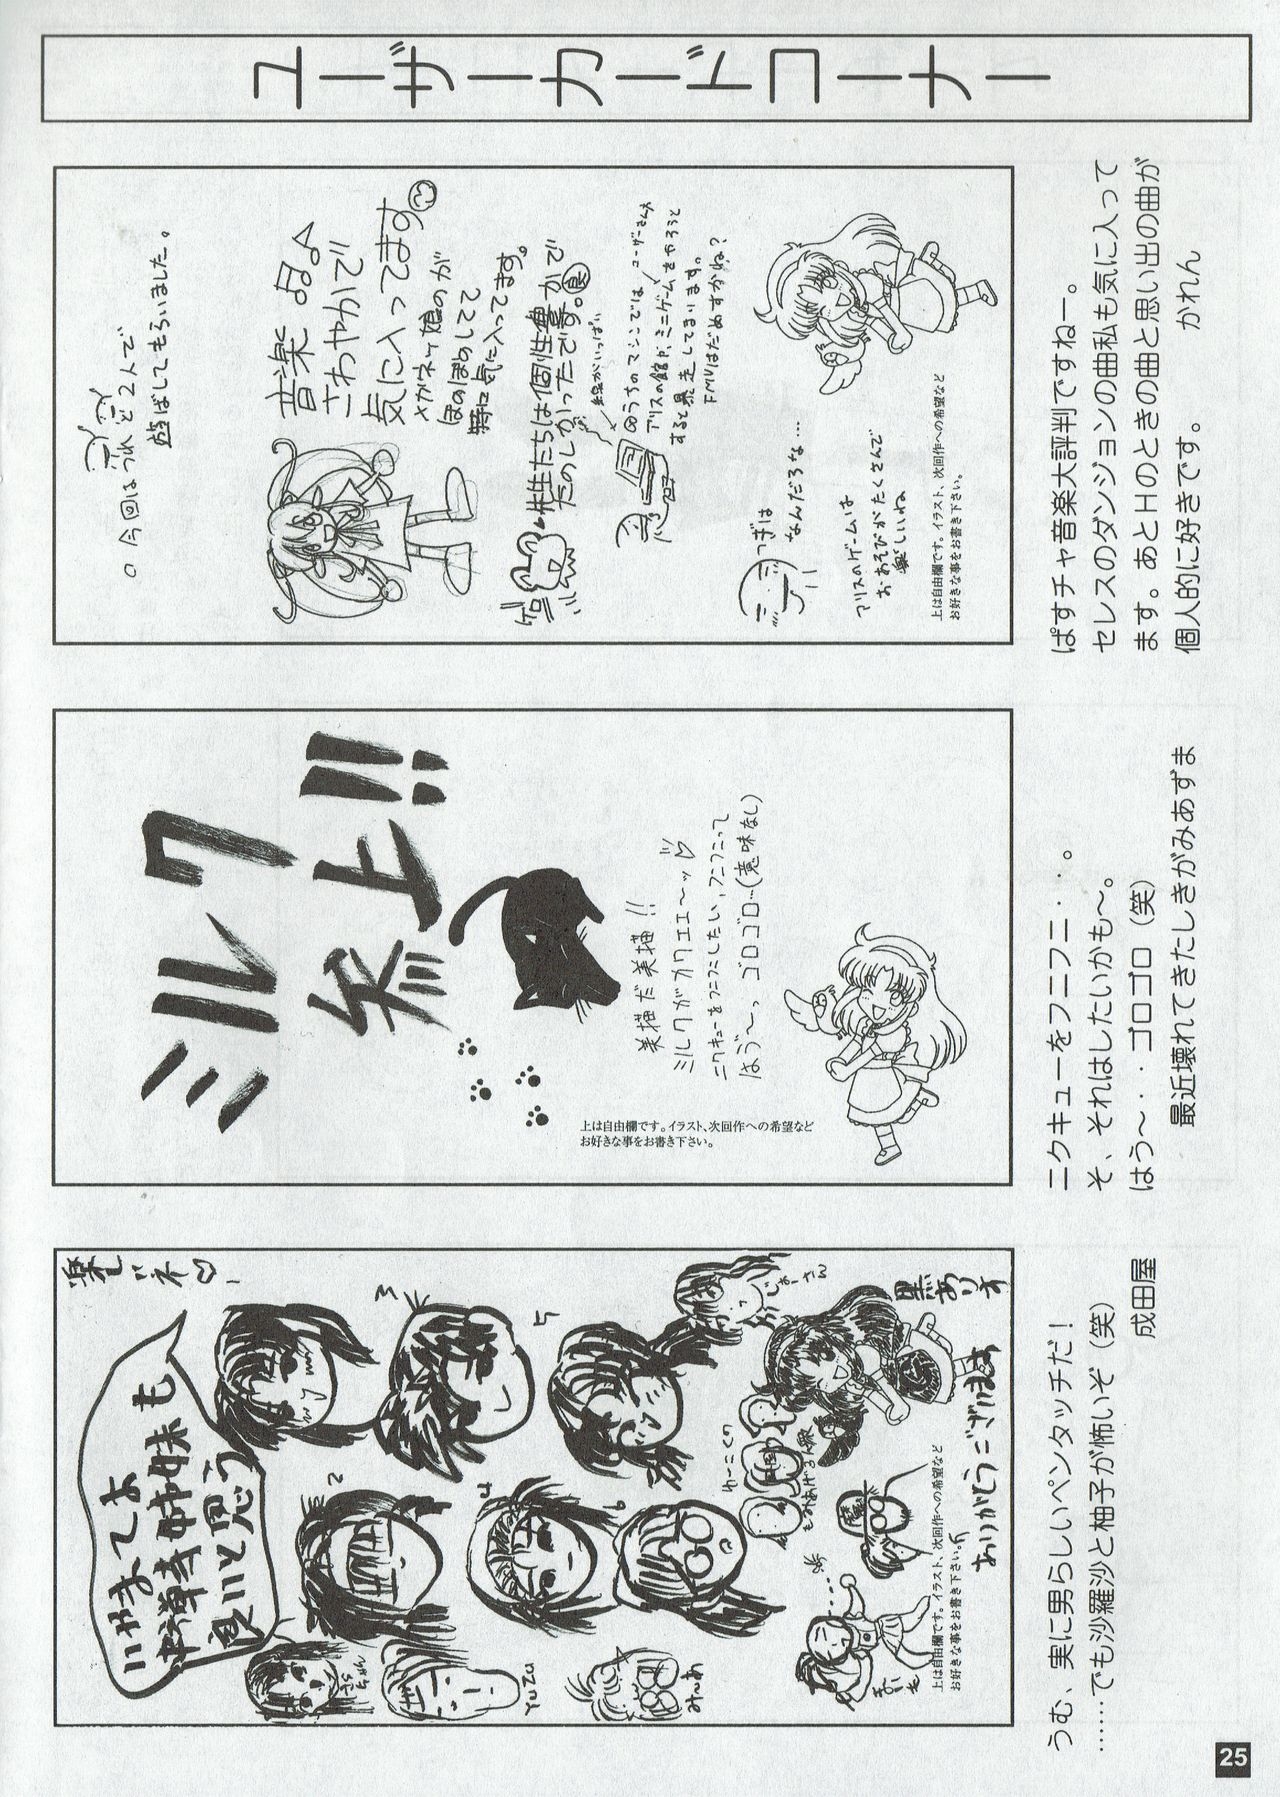 Arisu no Denchi Bakudan Vol. 05 24